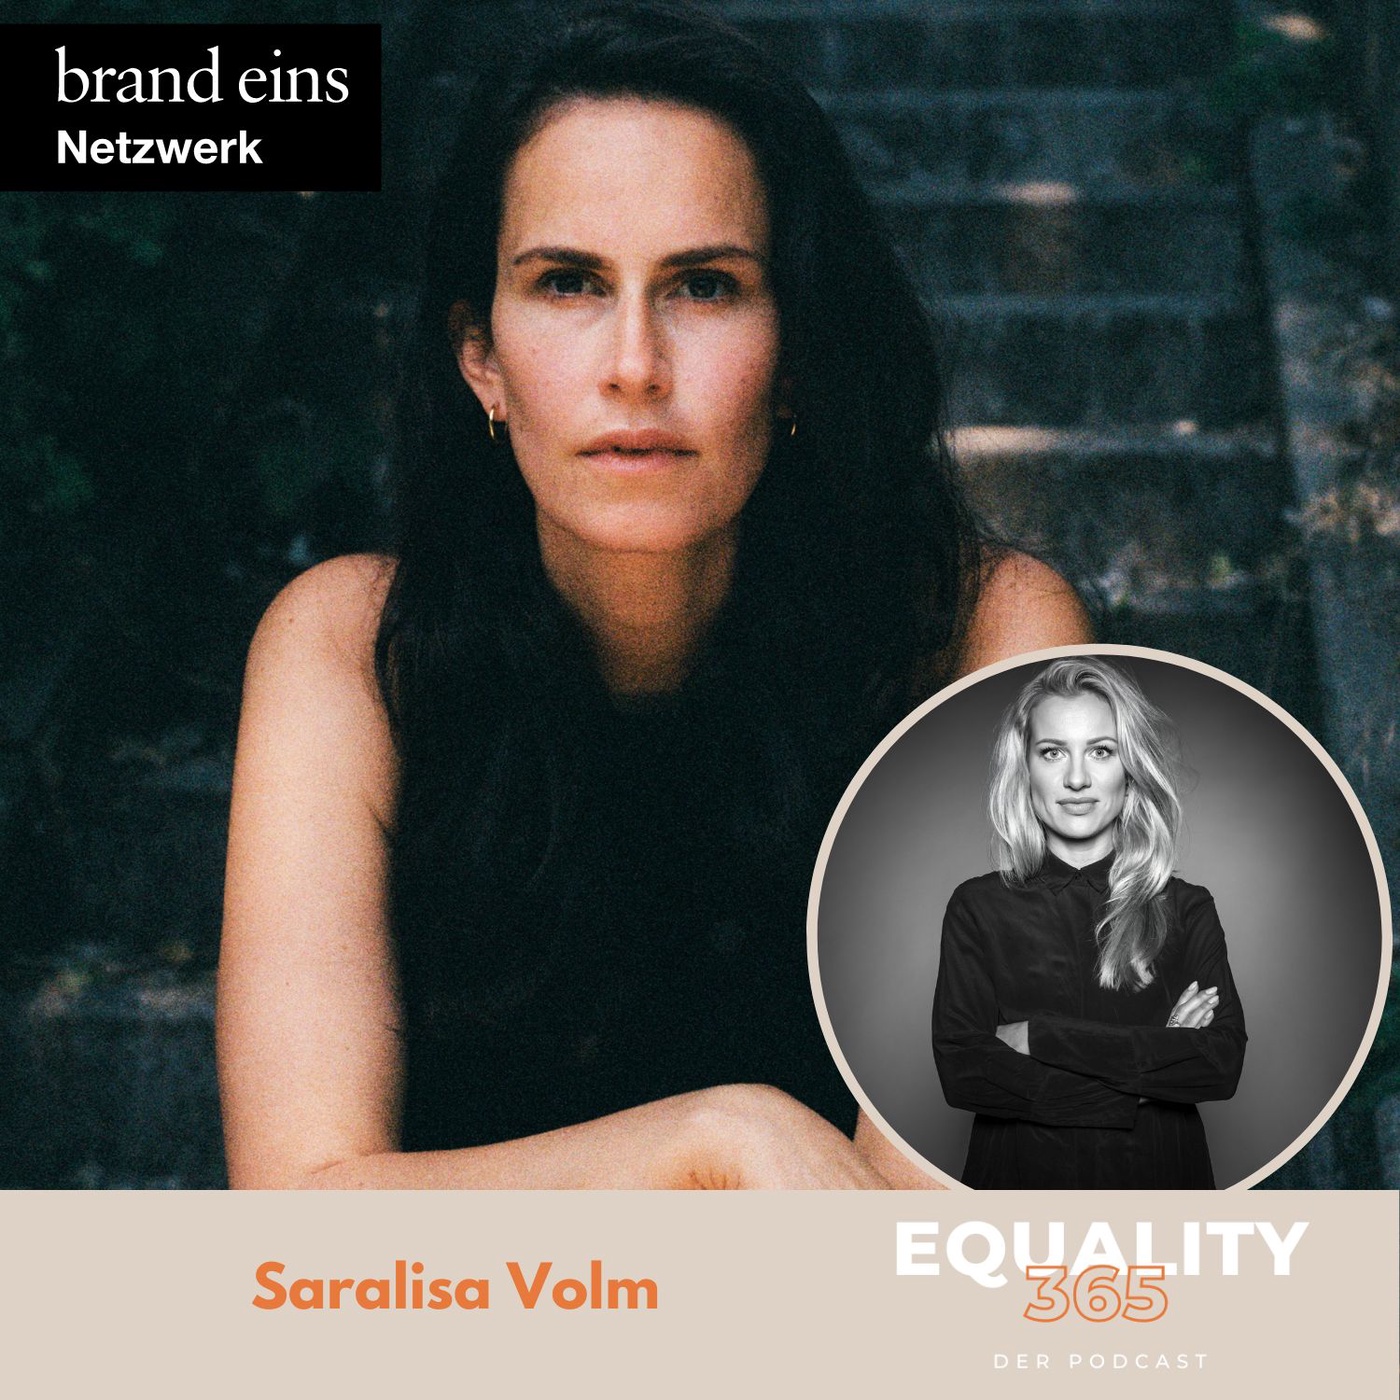 #53 Saralisa Volm: Regisseurin, Autorin, Unternehmerin, 4-fach Mutter und Schauspielerin.